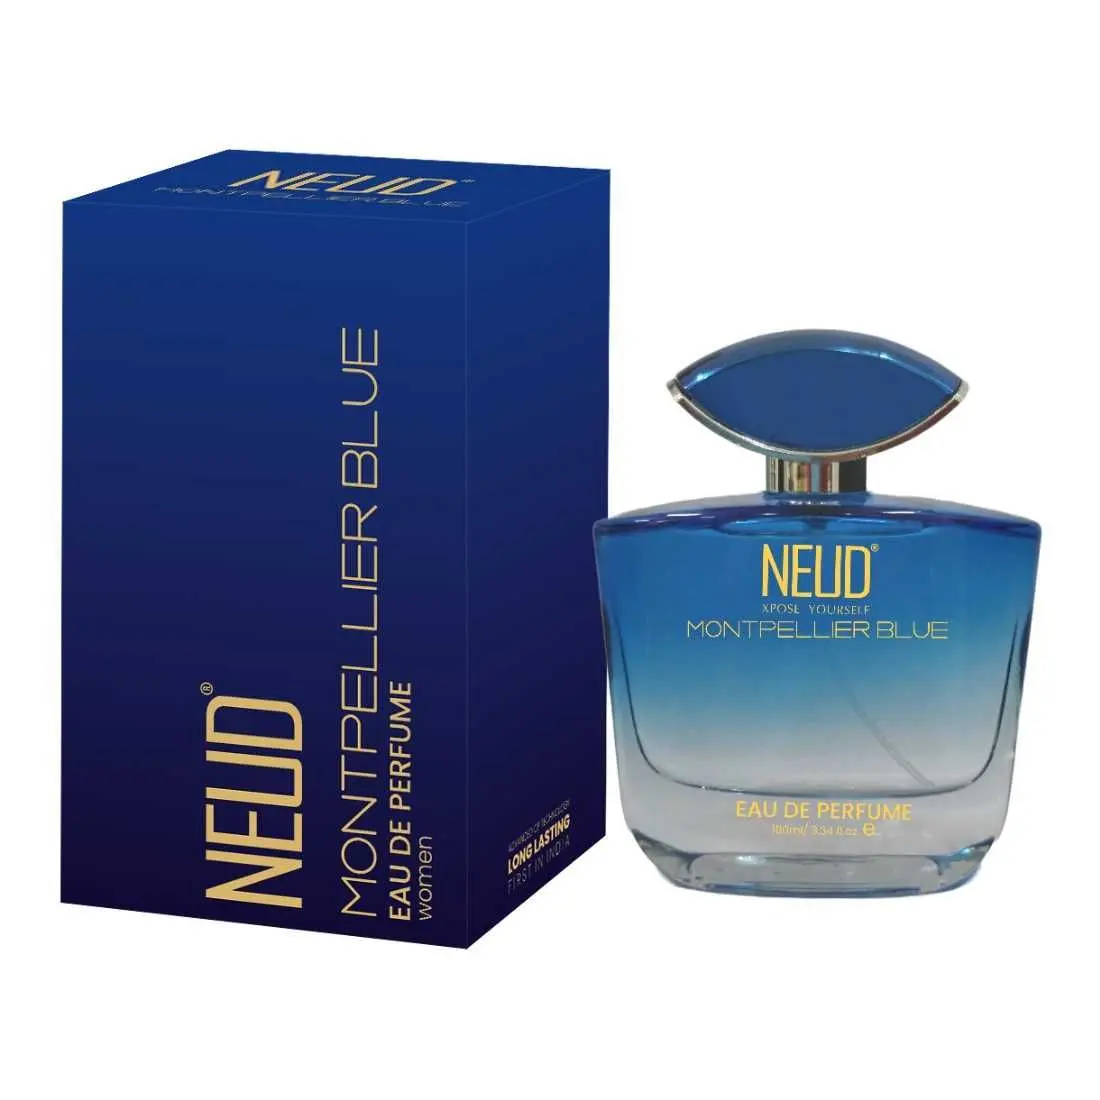 NEUD Montpellier Blue Luxury Perfume for Elegant Women Long Lasting EDP - 1 Pack (100ml)